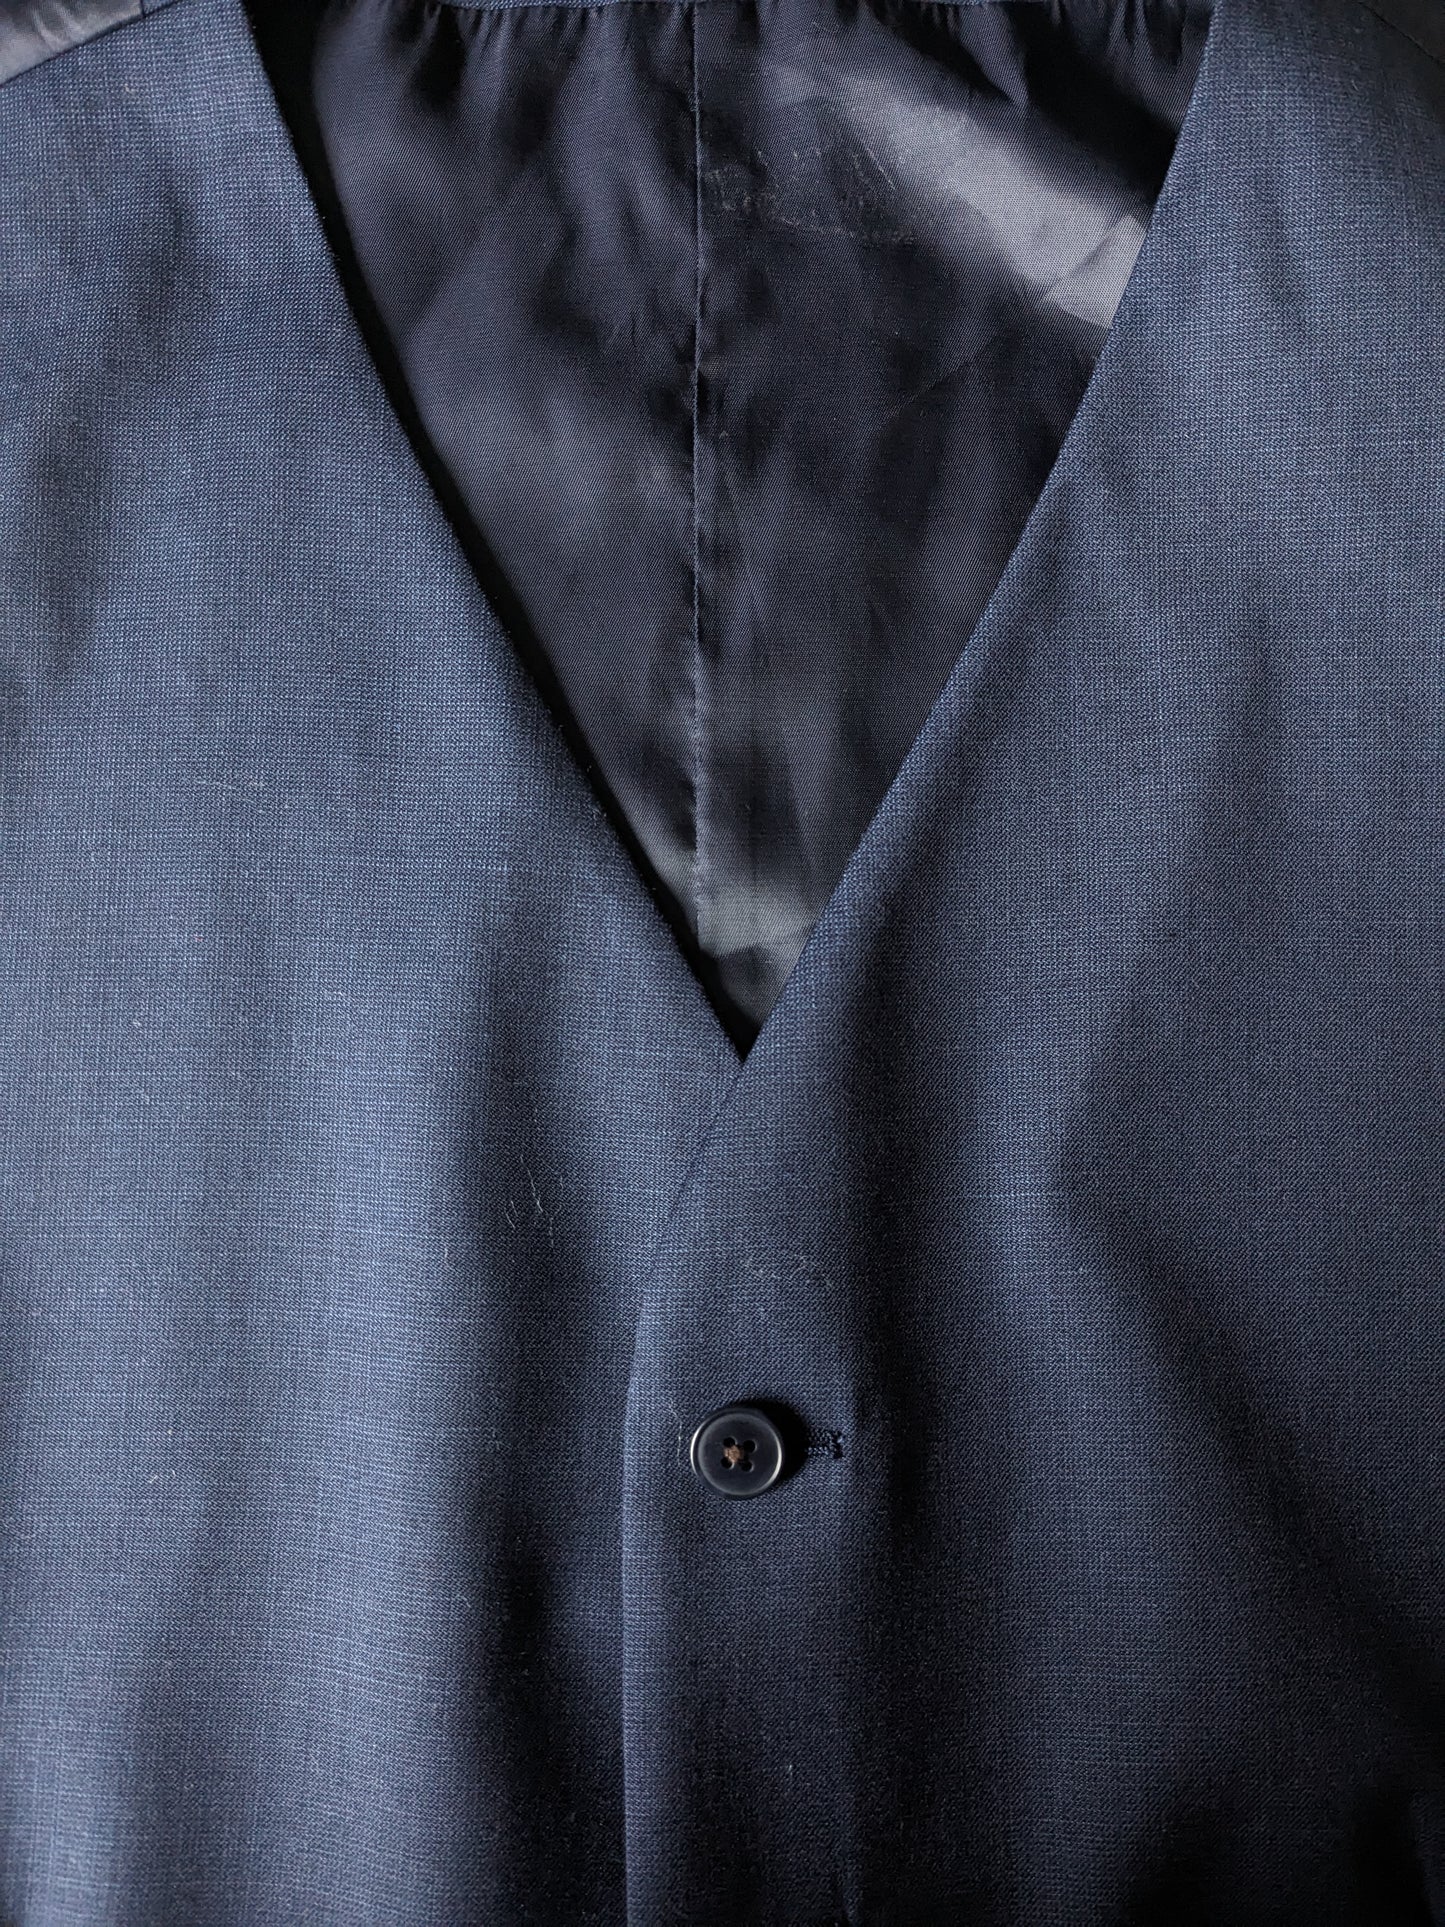 Riley woolen waistcoat. Dark blue motif. Size 54 / L. 70% Wool. #332